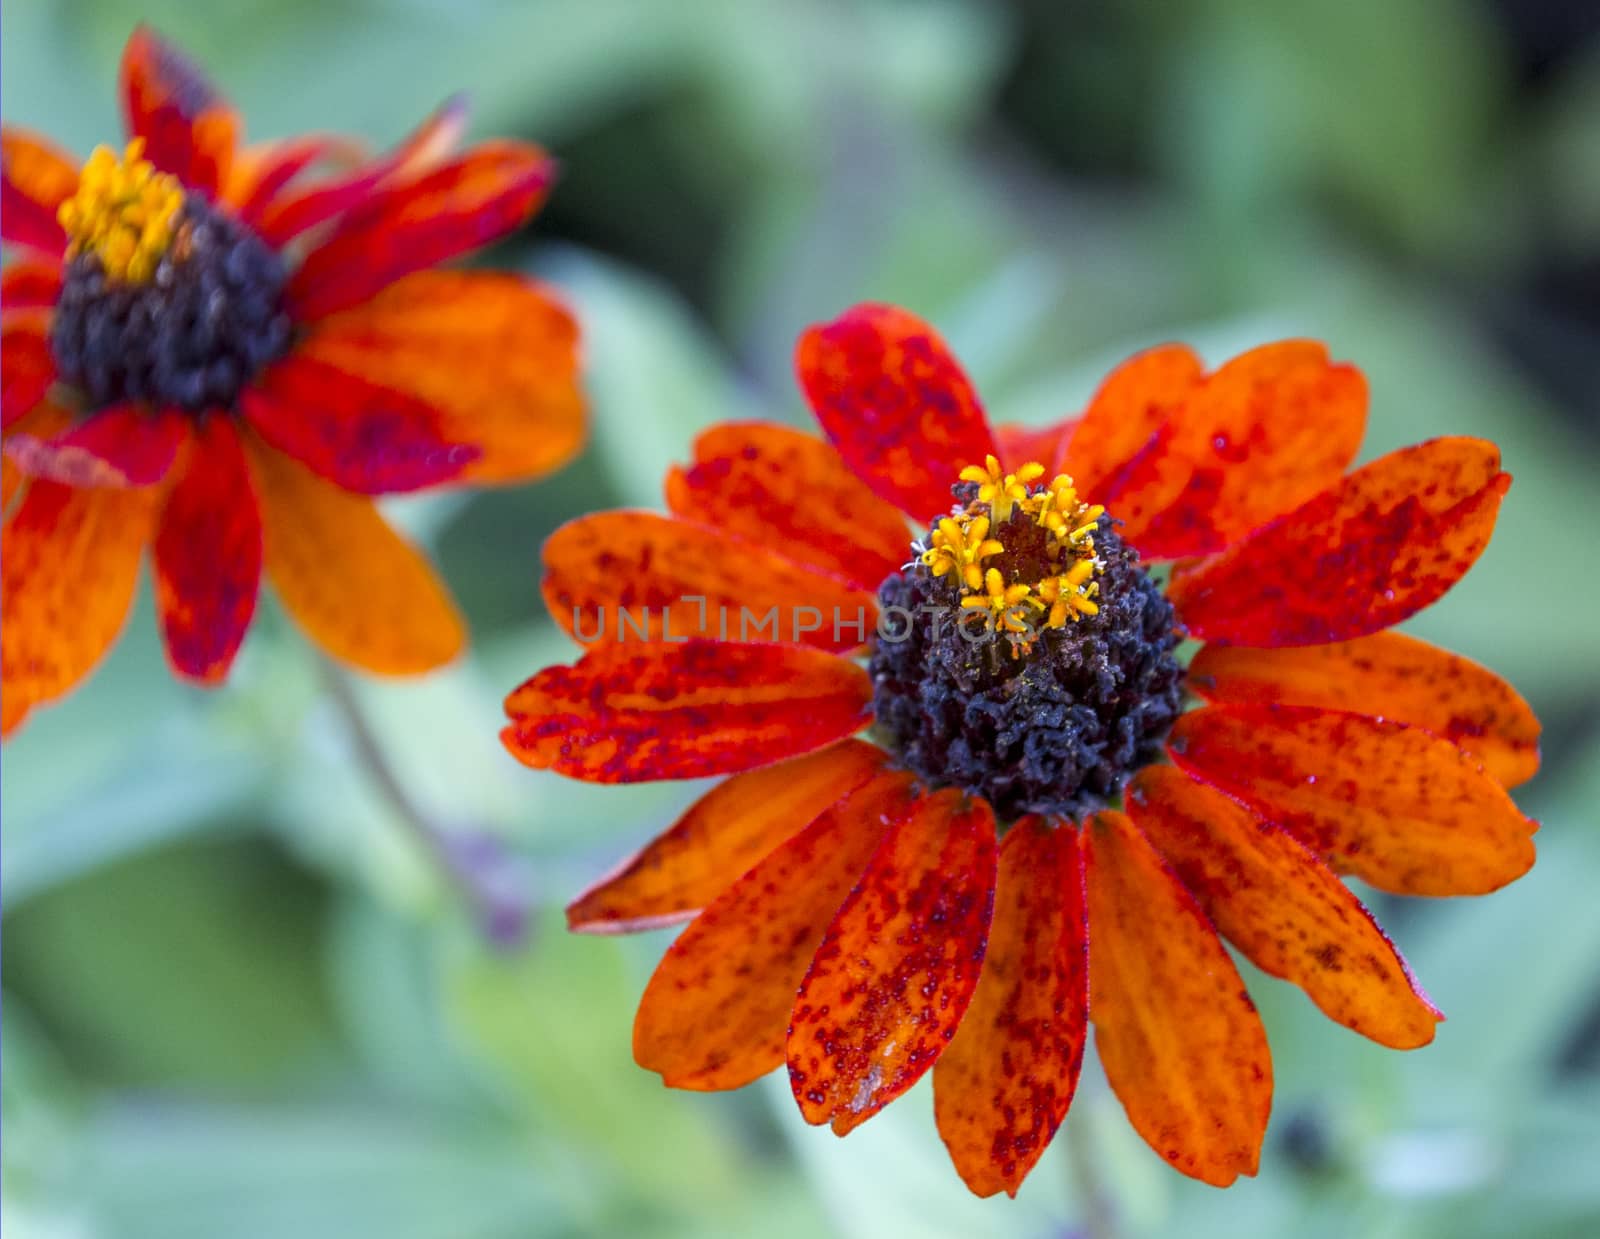 Orange Flowers by bkenney5@gmail.com